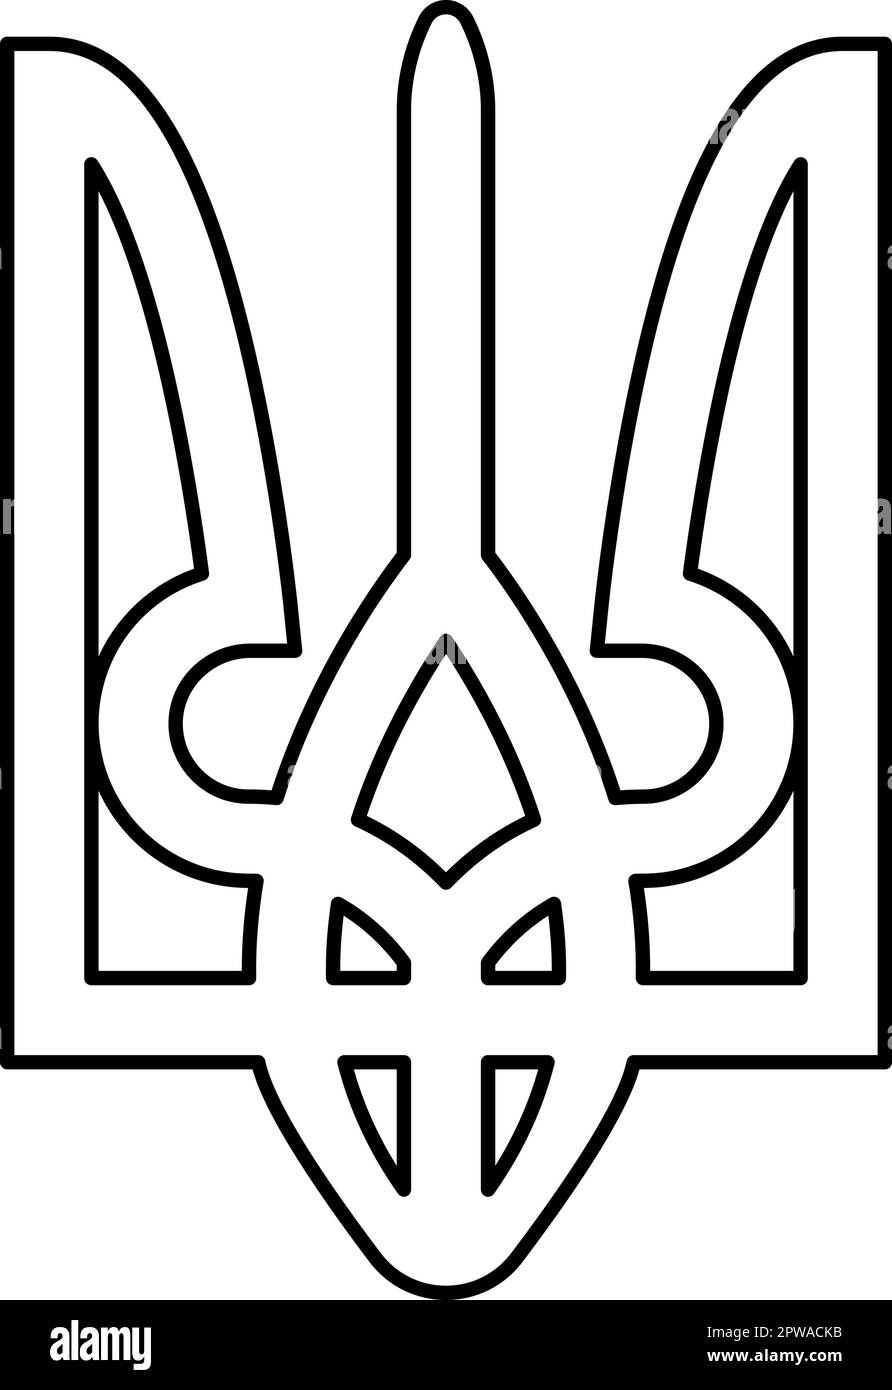 Ukraine blason emblème national sceau de l'état ukrainien symbole signe trident tryzub contour ligne icône noir couleur vecteur illustration image mince style plat Illustration de Vecteur